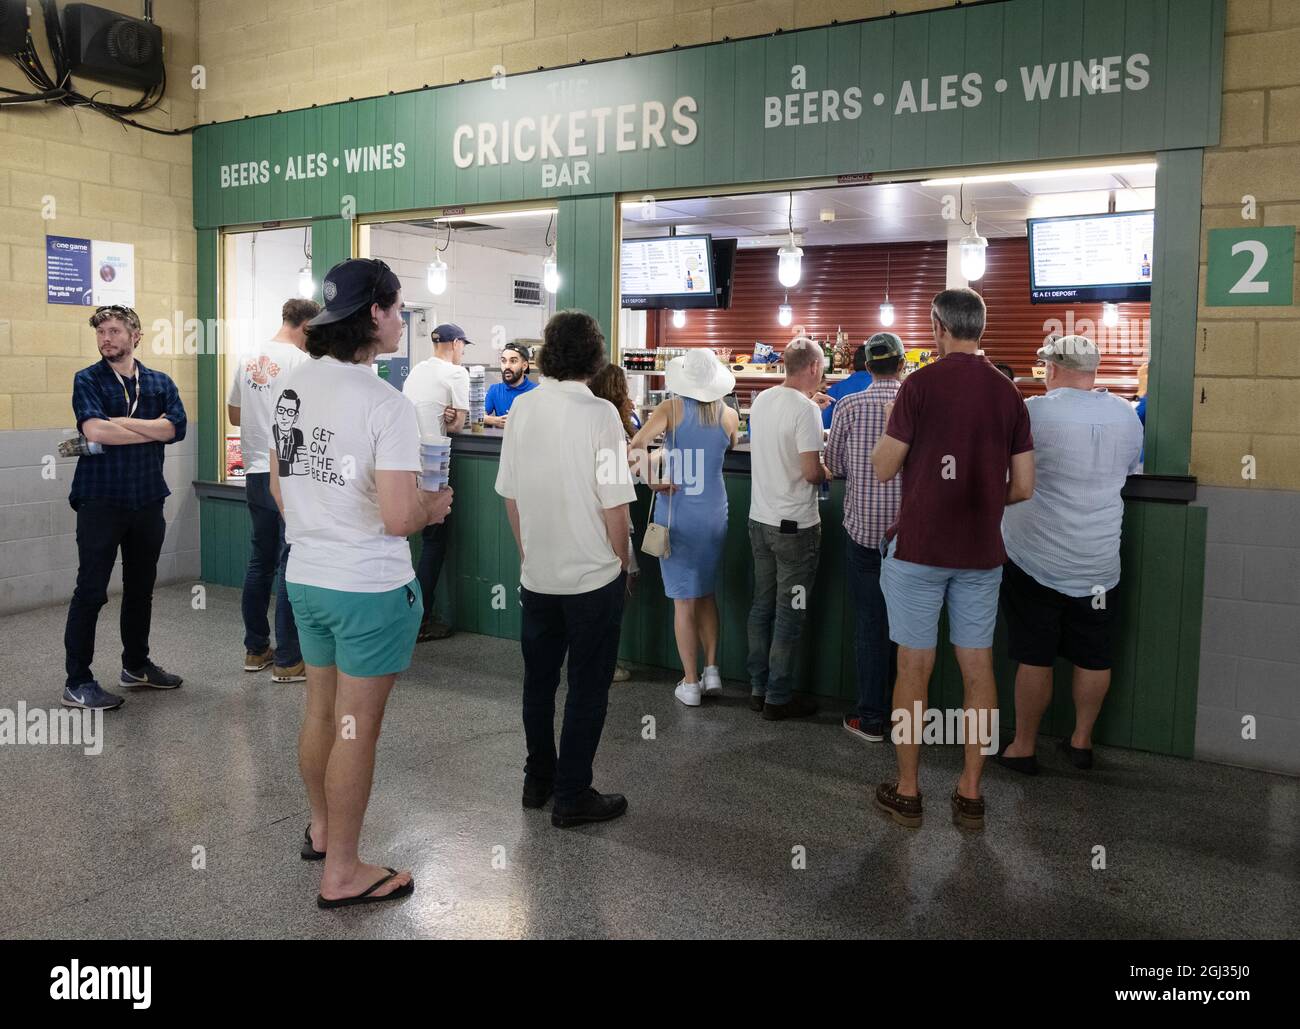 Les gens font la queue pour prendre un verre au Cricketers Bar lors d'un match de cricket, le terrain de cricket ovale, Kennington, Londres, Royaume-Uni Banque D'Images